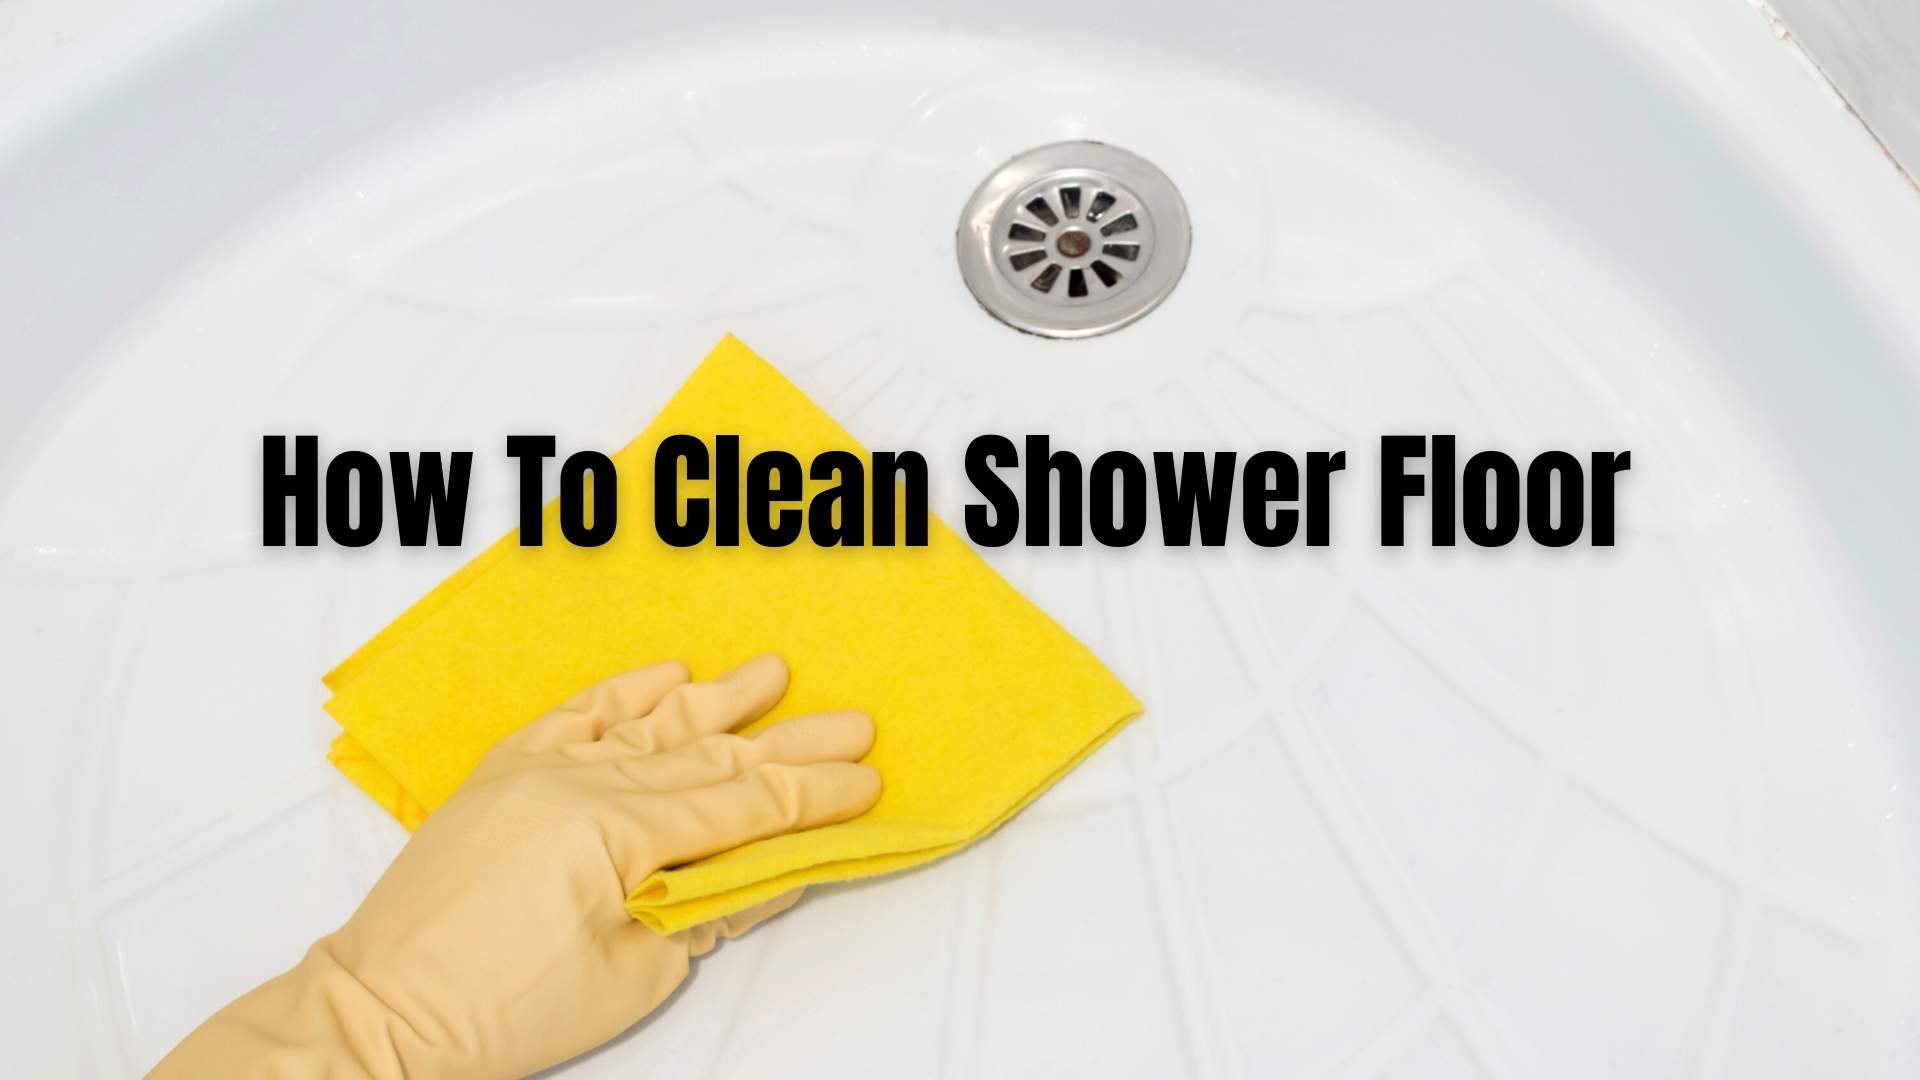 How To Clean Shower Floor – Fiberglass or Plastic